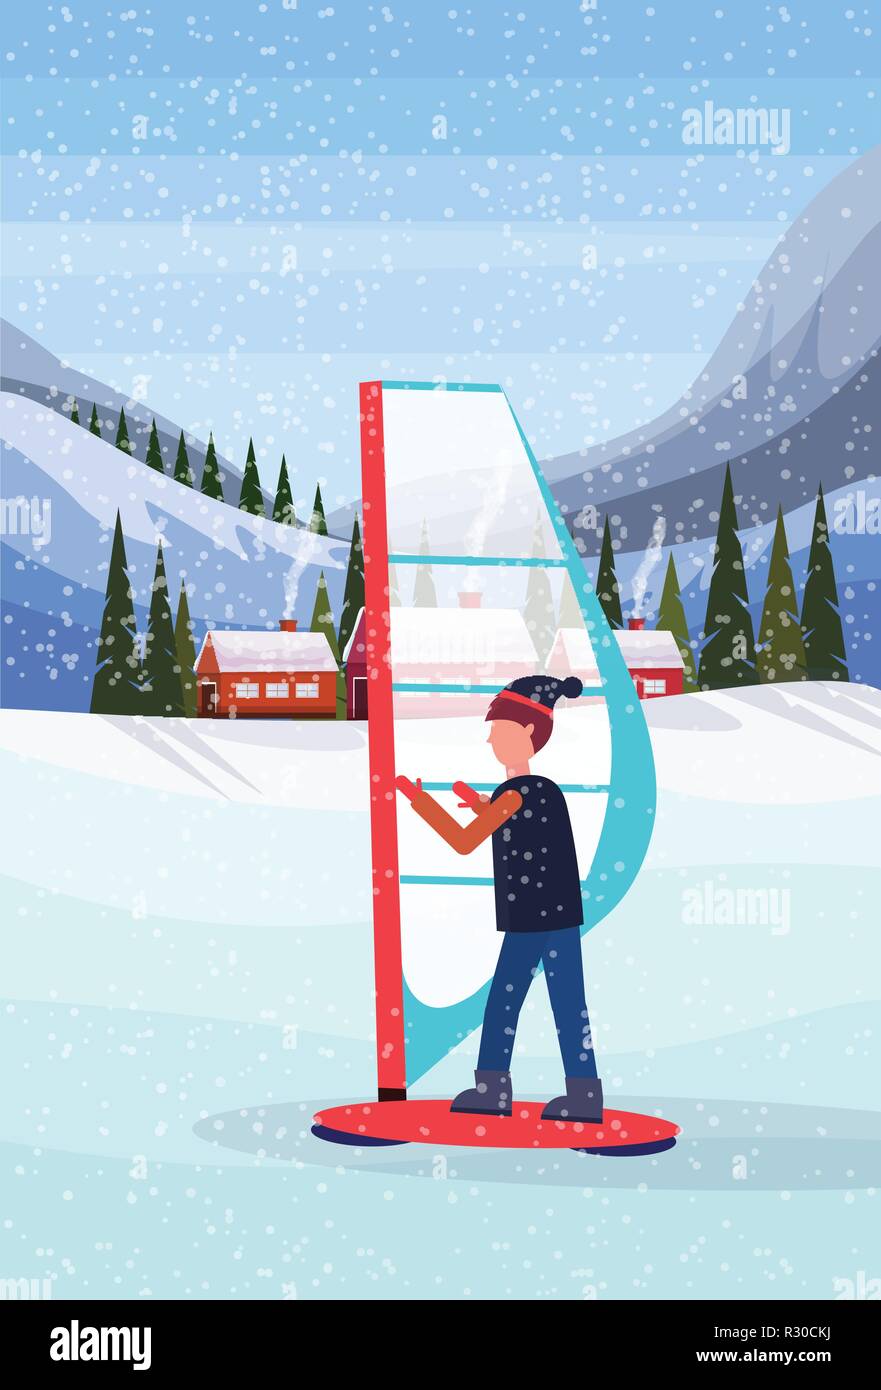 L'uomo windboarding windsurf sulla neve oltre le piccole case di villaggio in inverno le montagne innevate colline la foresta di abeti sullo sfondo del paesaggio piatto verticale Illustrazione Vettoriale